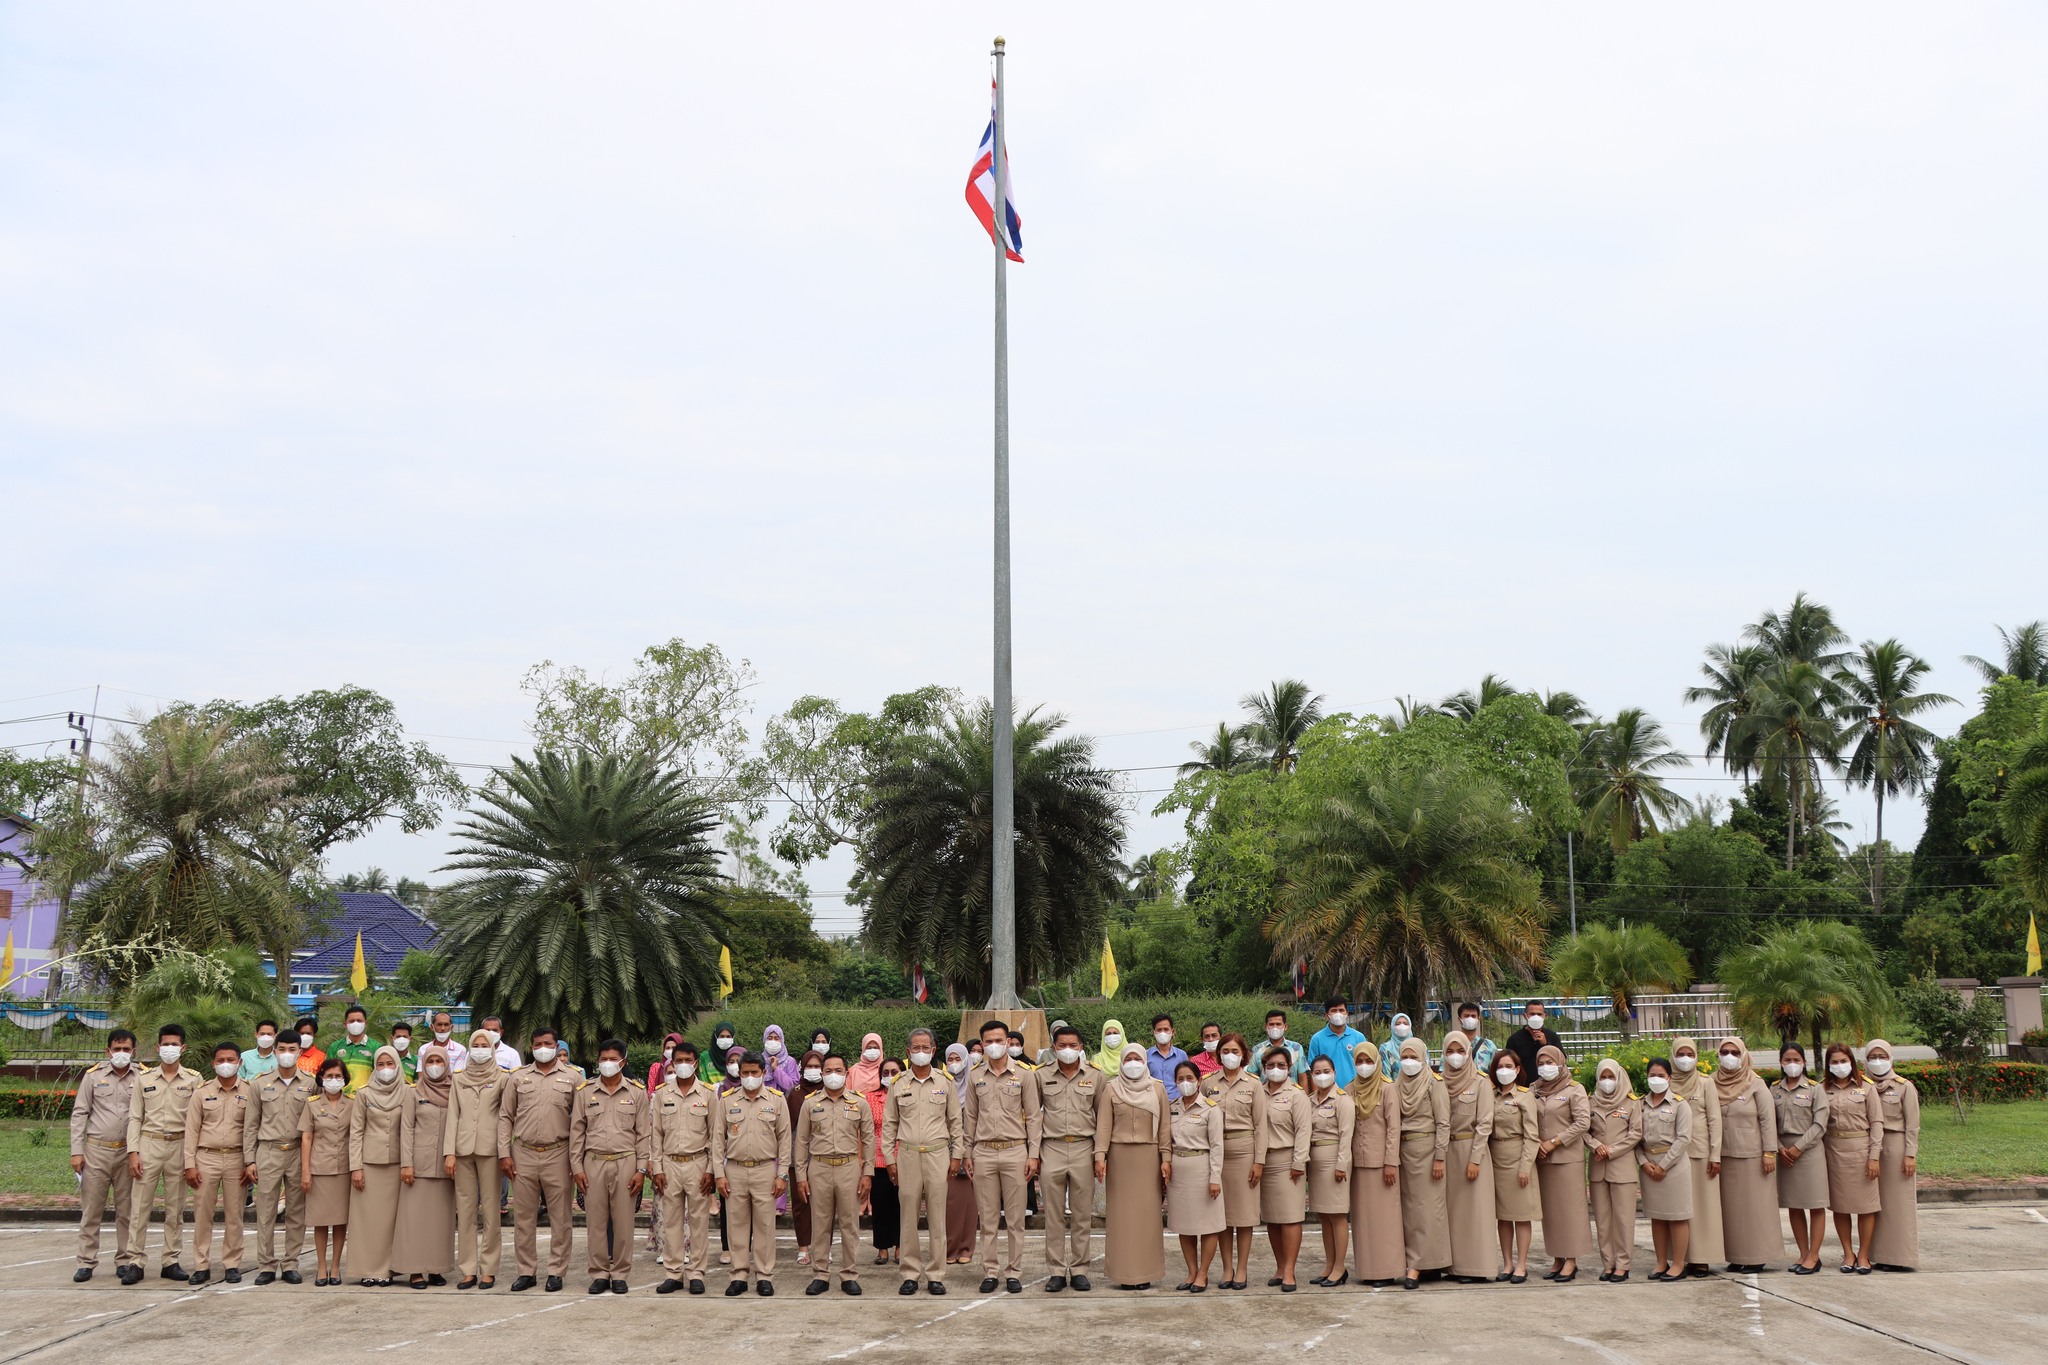 กิจกรรมเข้าแถวเคารพธงชาติและร้องเพลงชาติไทย เนื่องในวันพระราชทานธงชาติไทย ประจำปี 2566